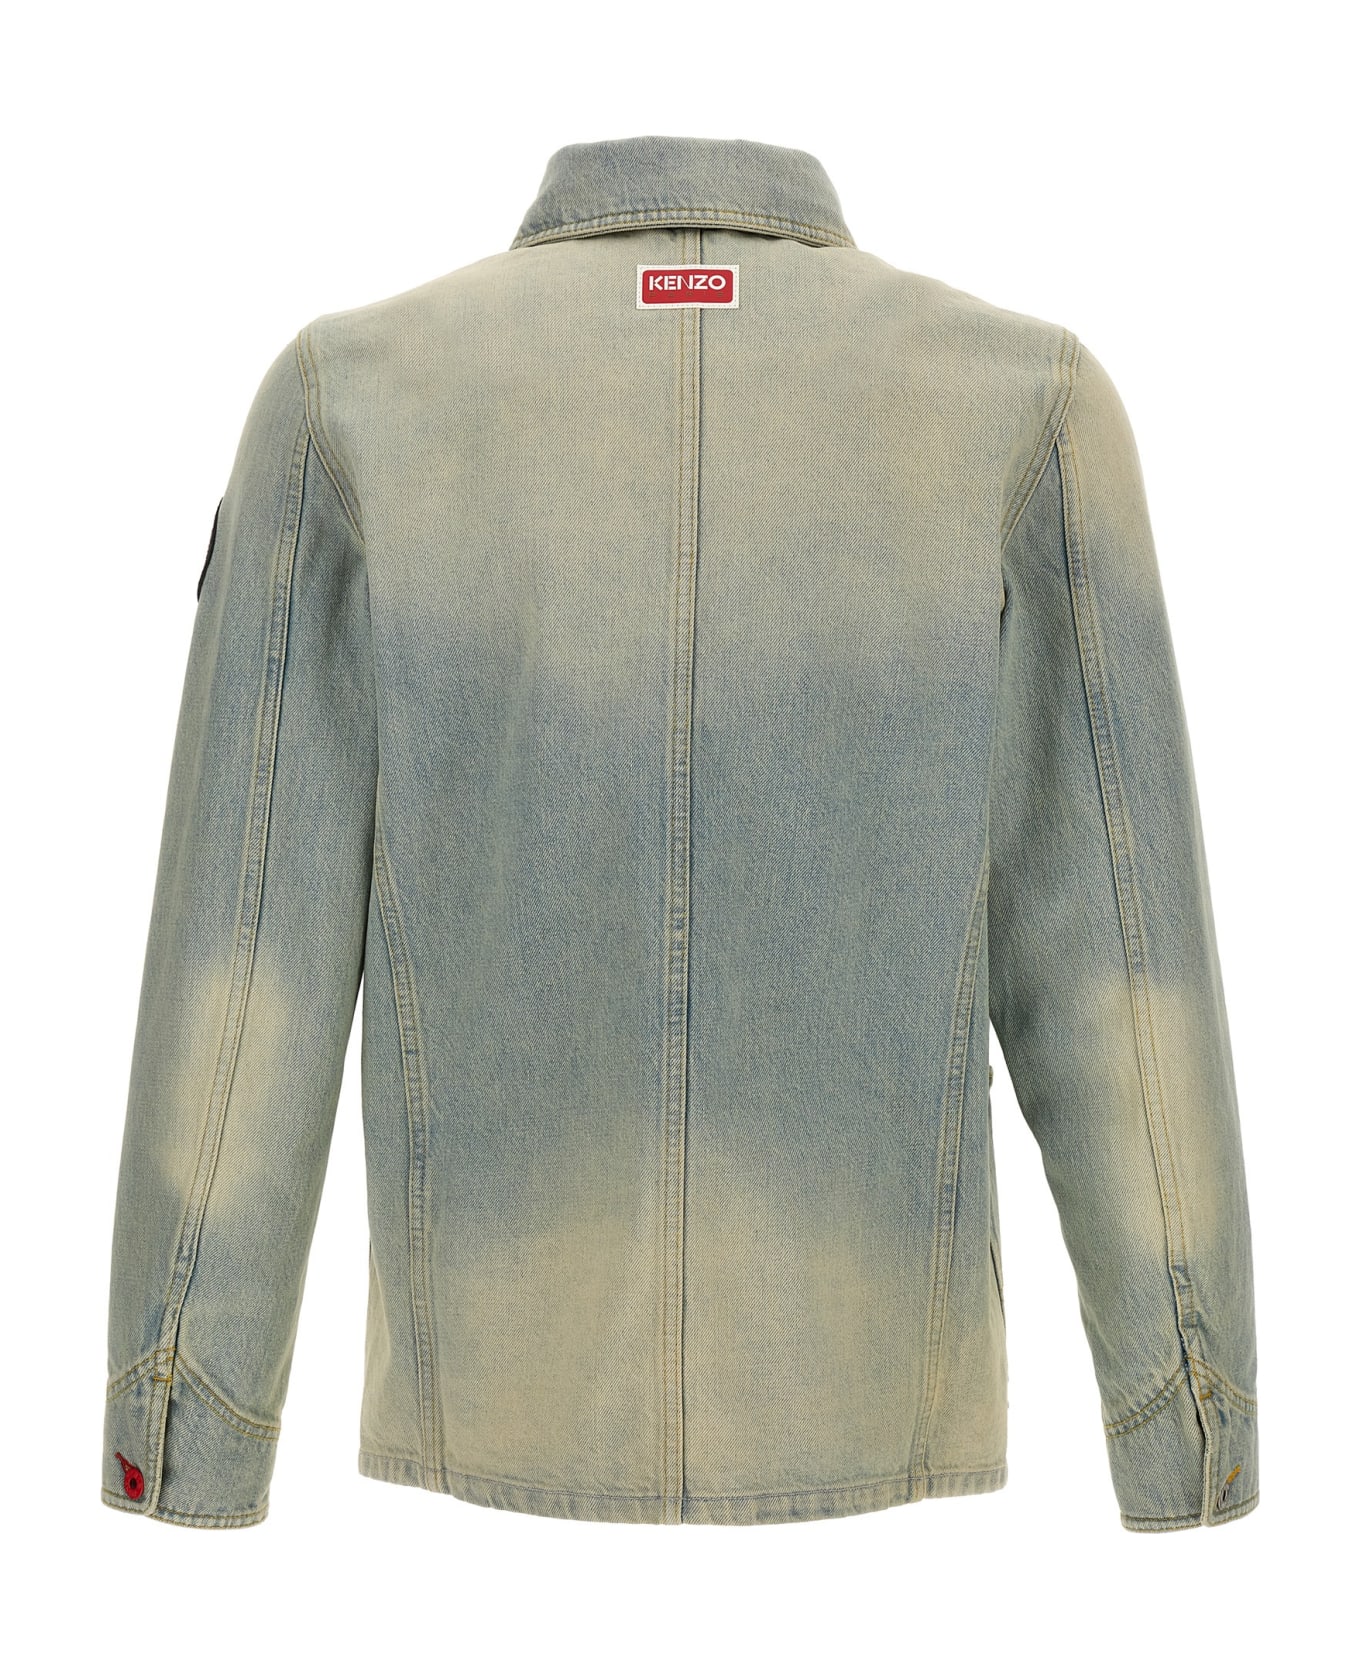 Kenzo 'workwear' Jacket - Light Blue ジャケット